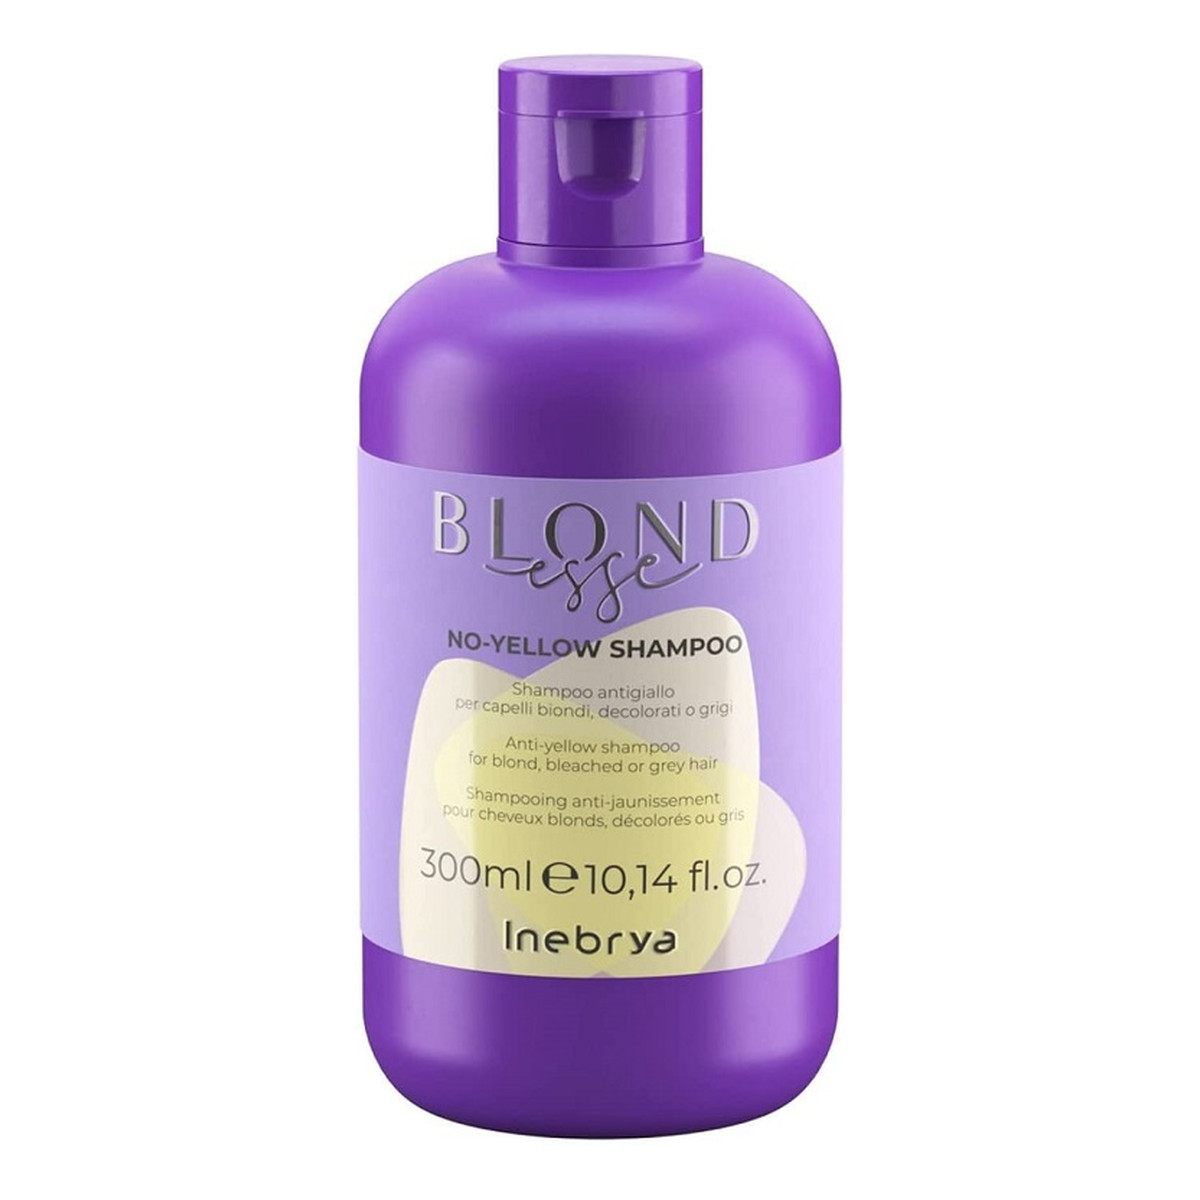 Inebrya Blondesse no-yellow shampoo szampon do włosów blond rozjaśnianych i siwych 300ml